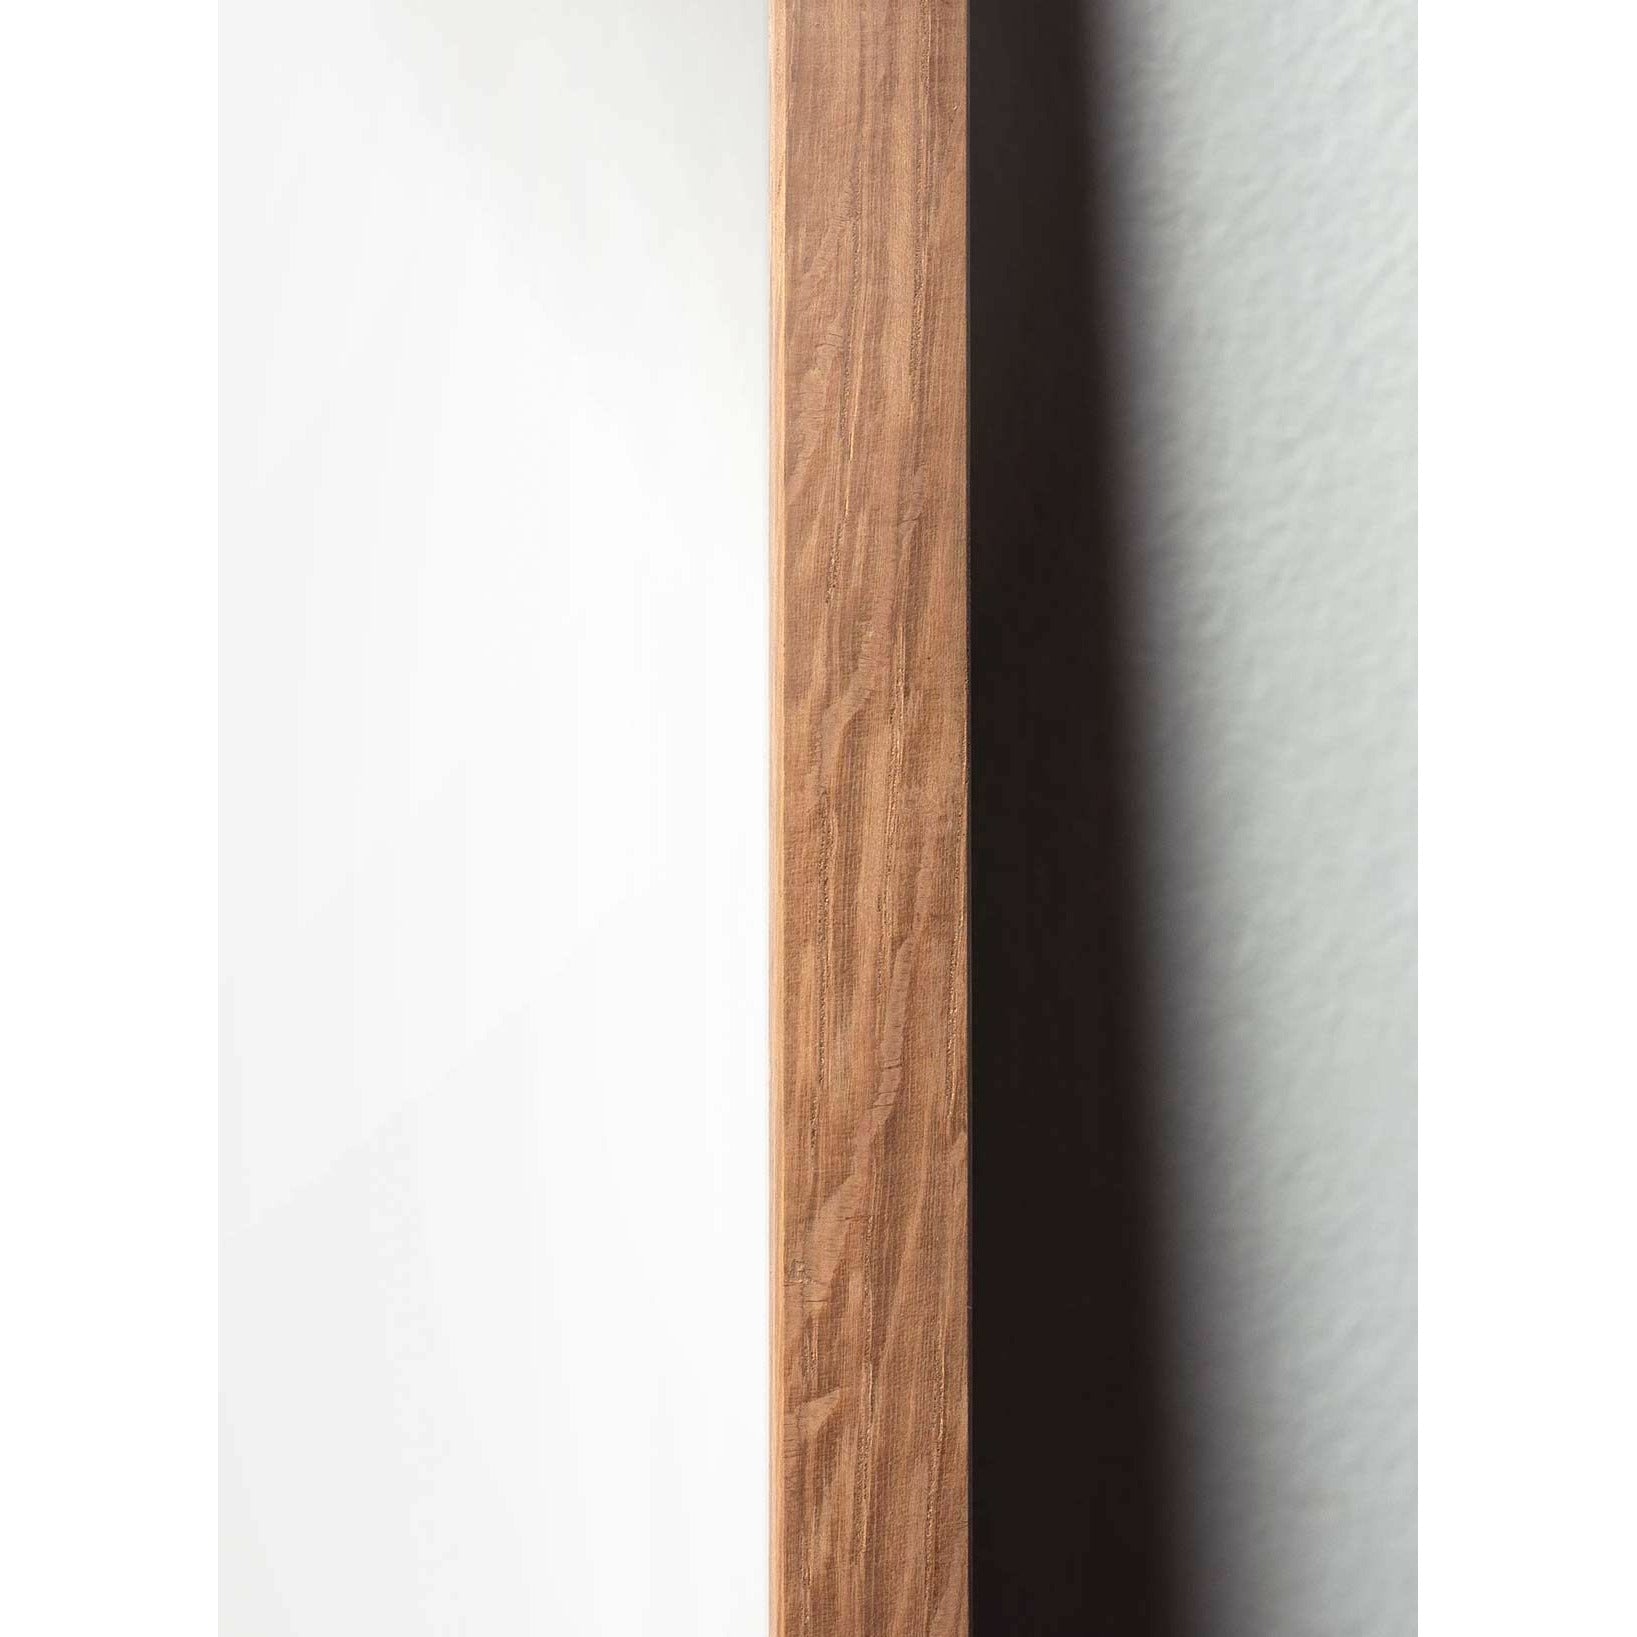 Plakát Pine Cone Line Pine Cone, rám vyrobený z lehkého dřeva 50x70 cm, bílé pozadí